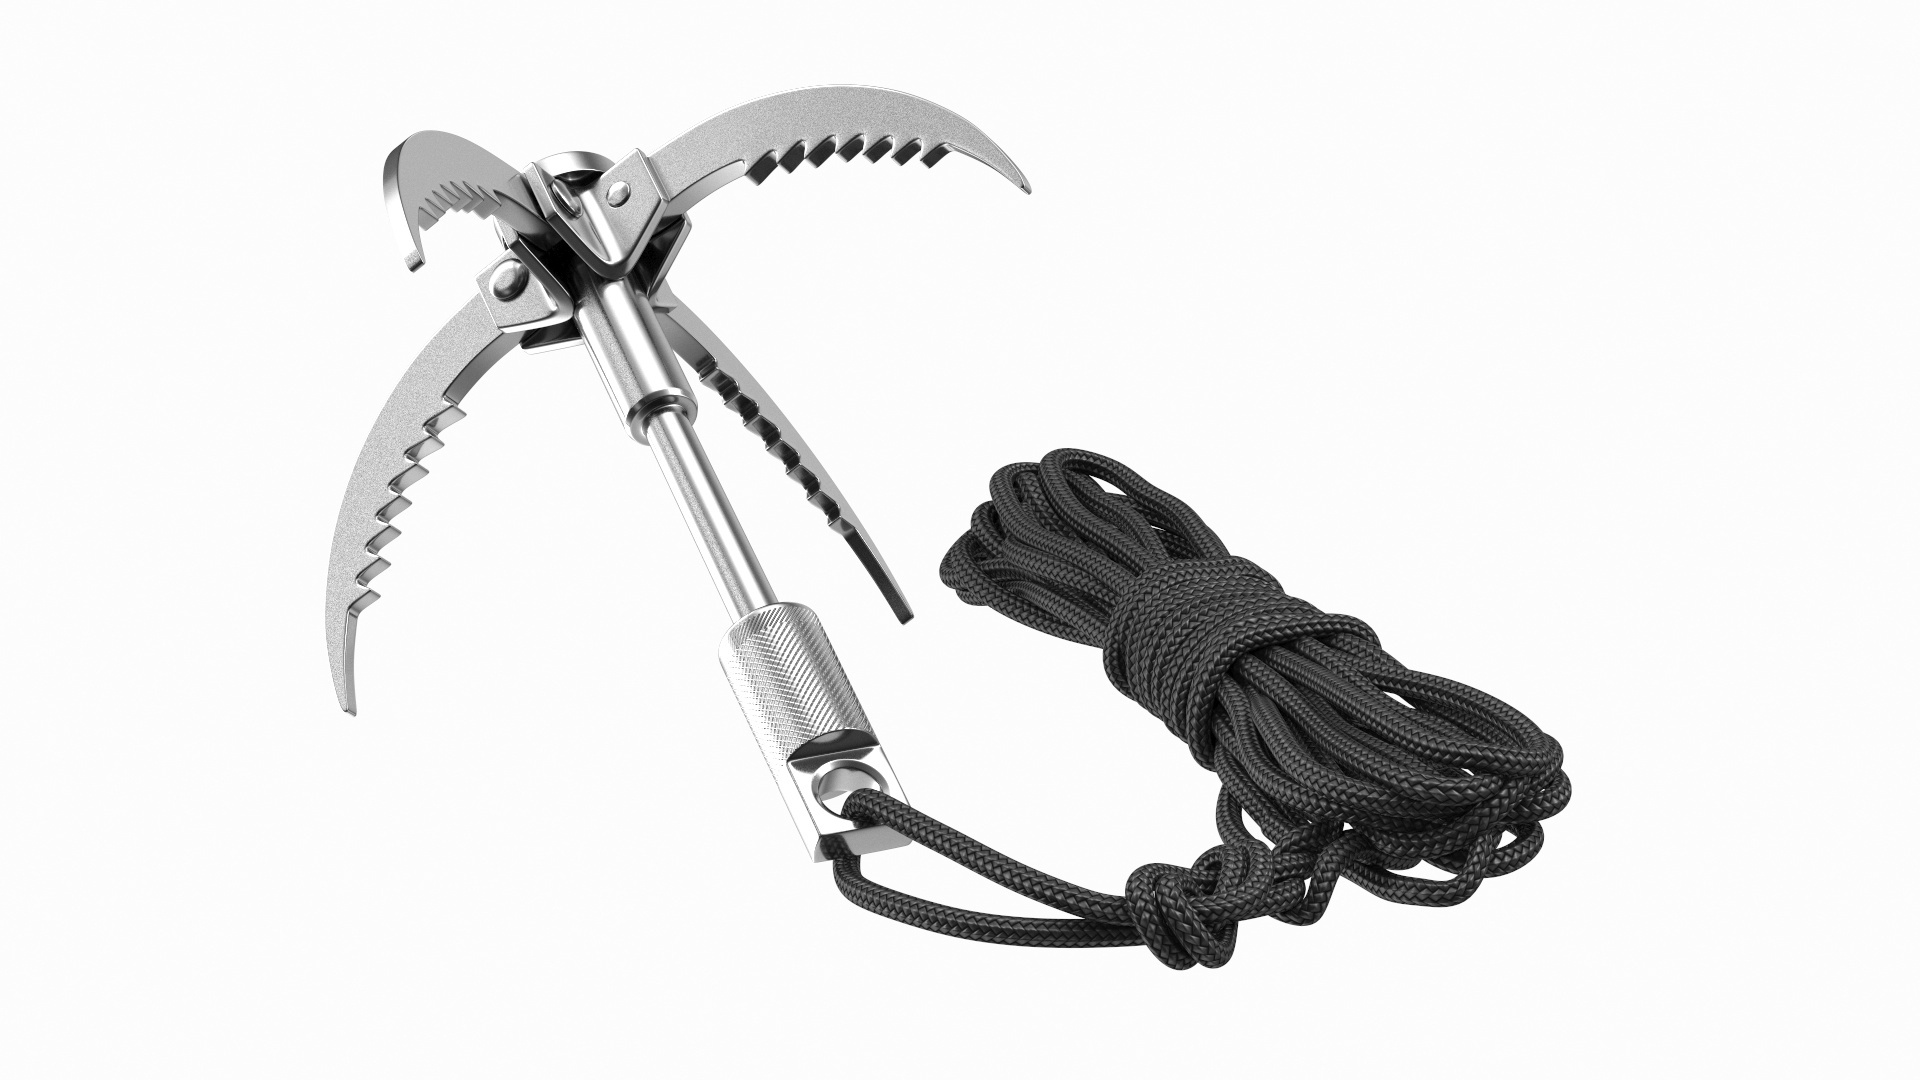 3D Folding Climbing Grappling Hook - TurboSquid 1618980